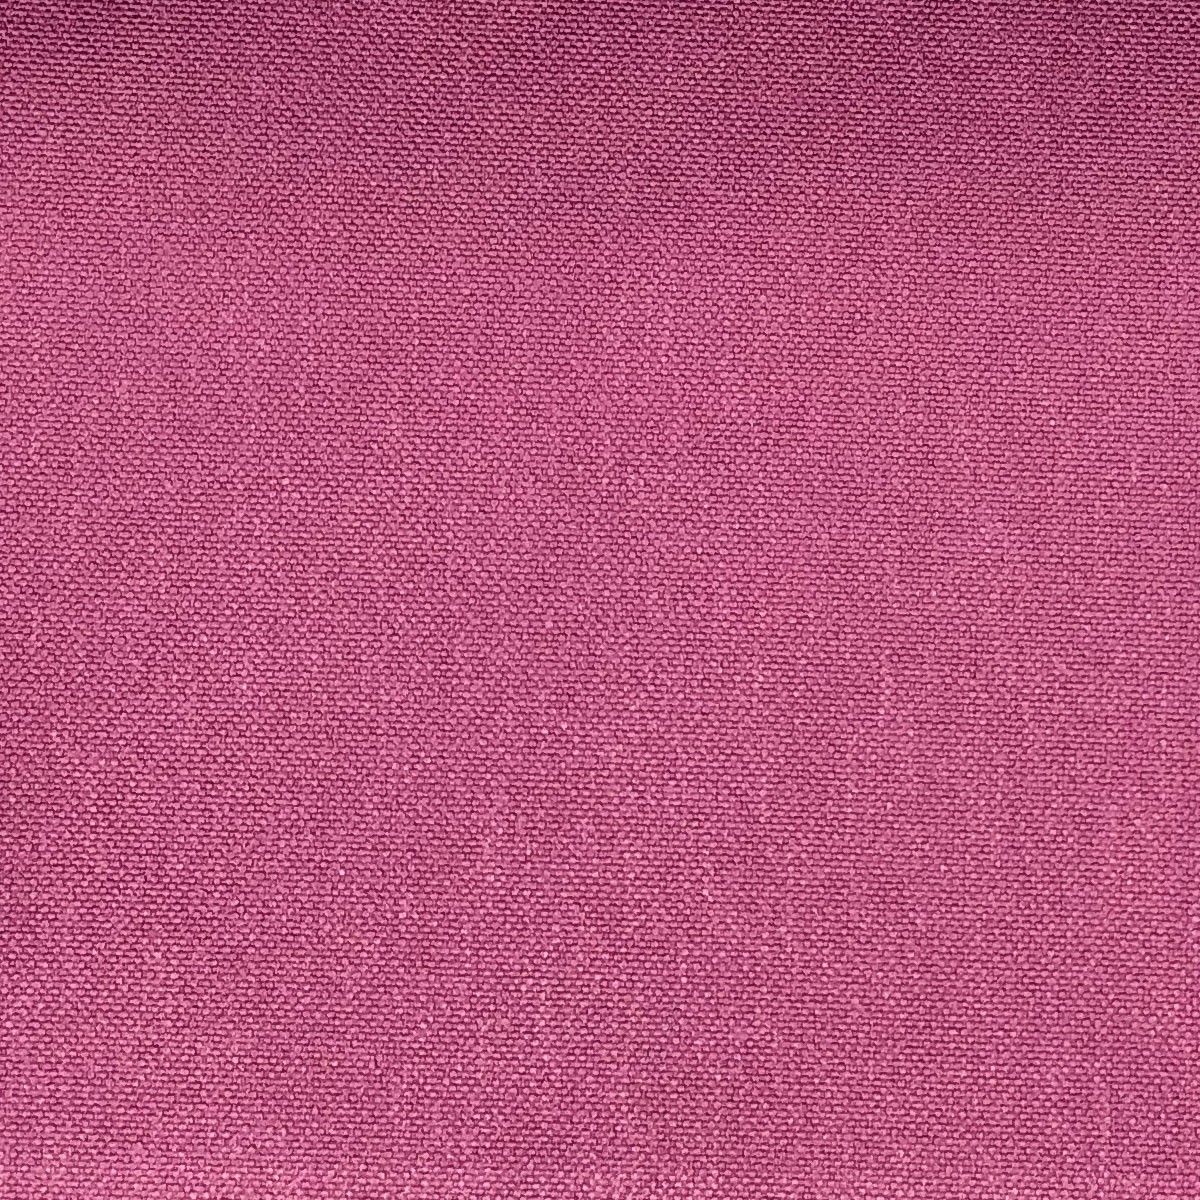 Glinara Currant Fabric by Chatham Glyn